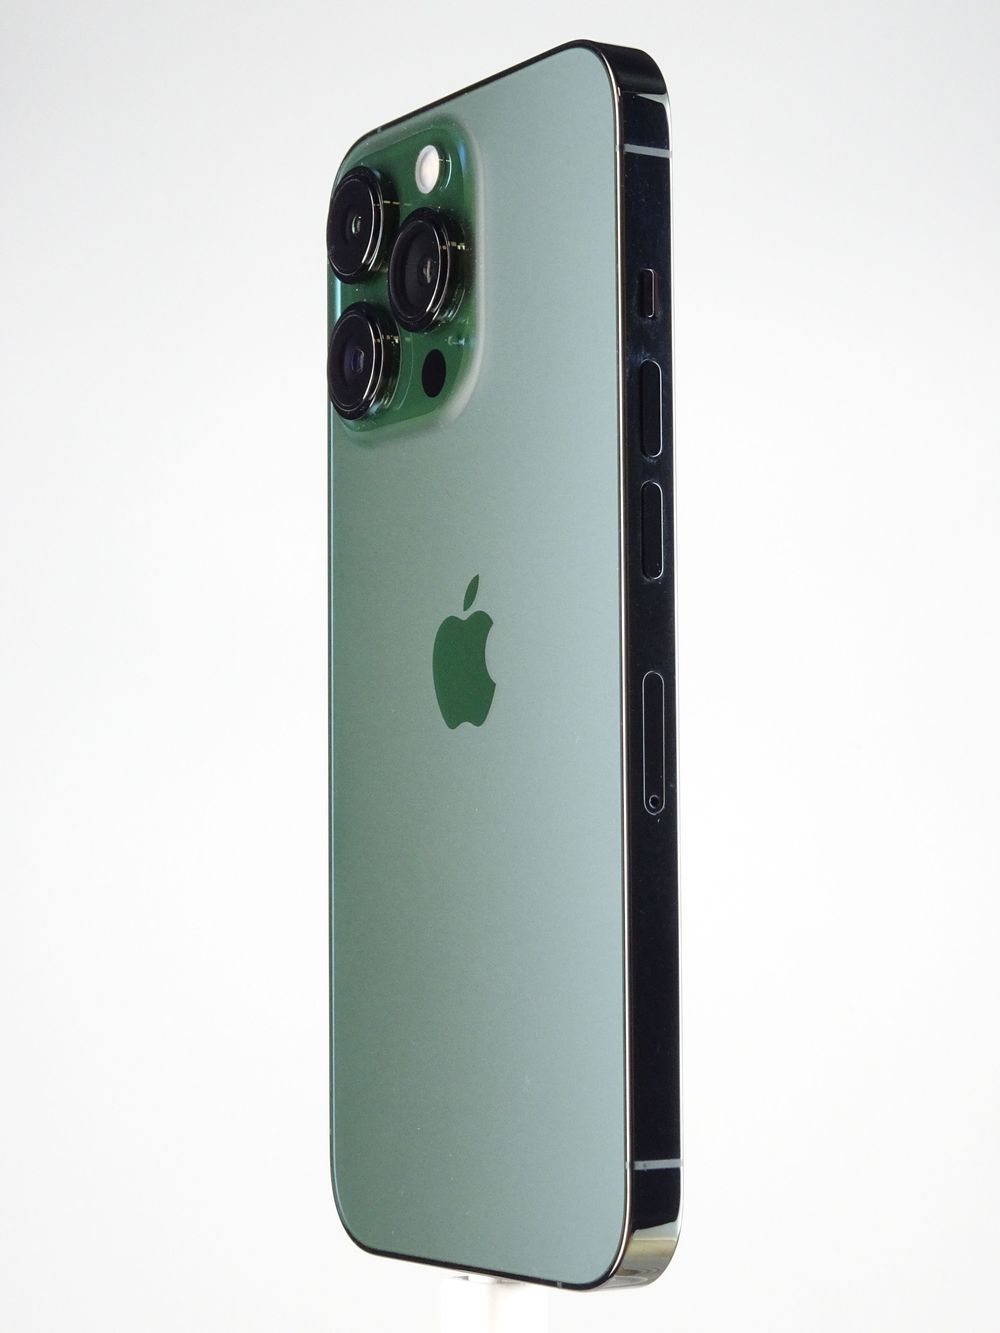 Telefon mobil Apple iPhone 13 Pro, Green, 1 TB,  Foarte Bun